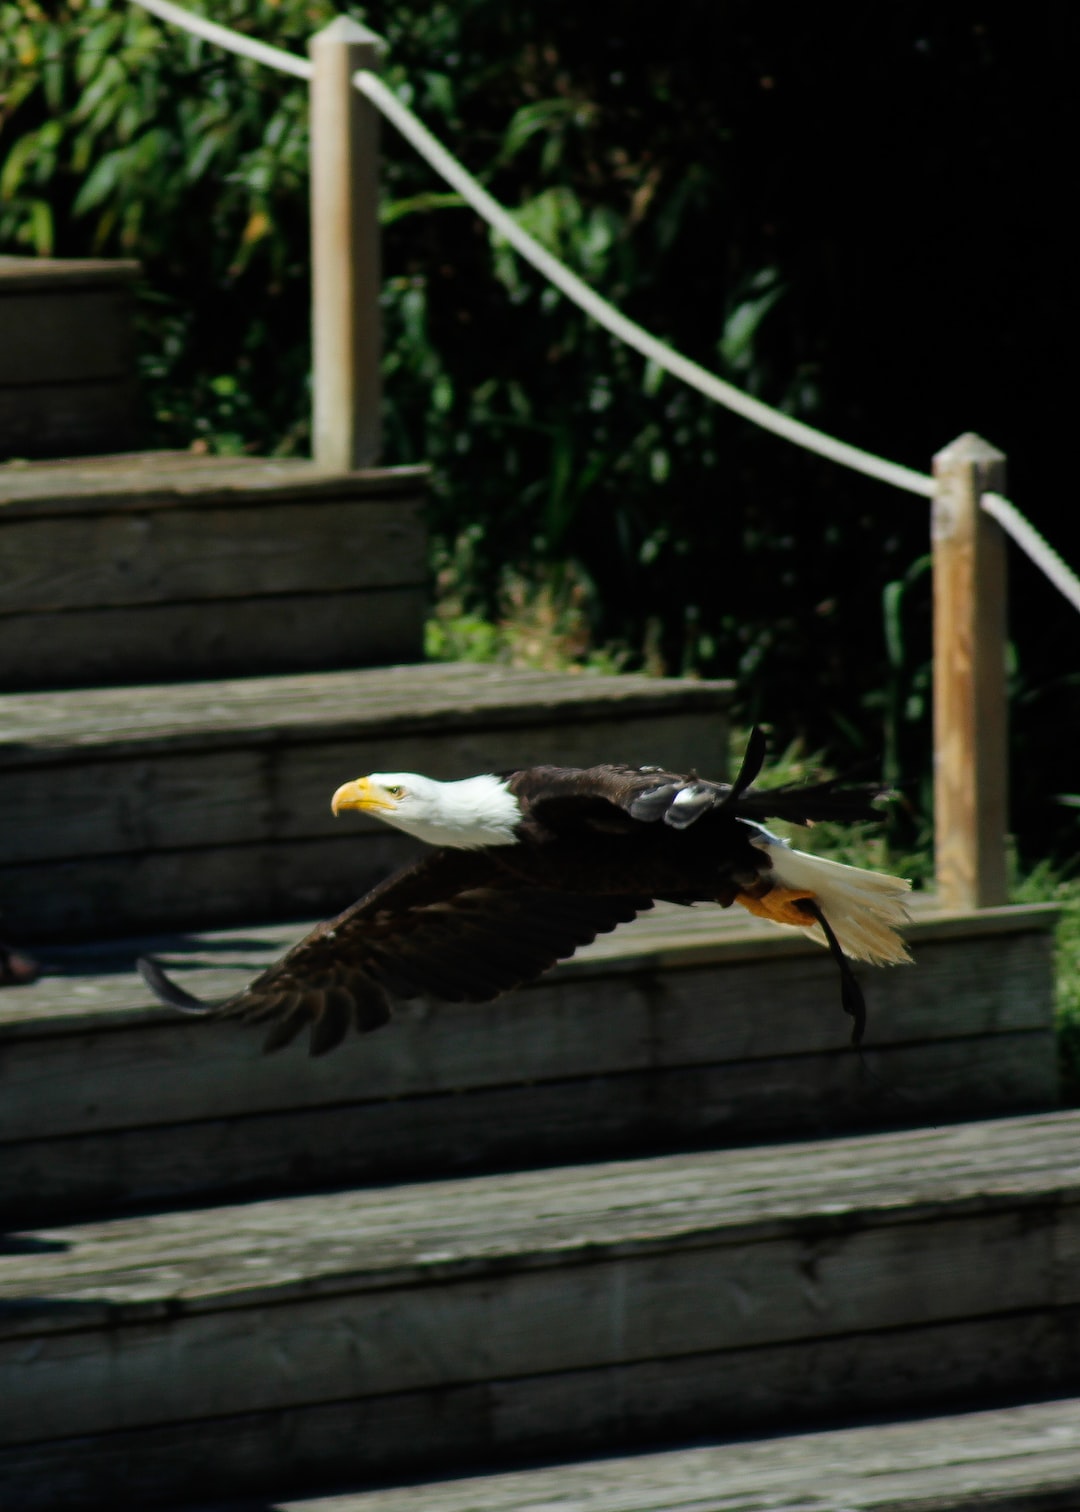 An Eagle in flight